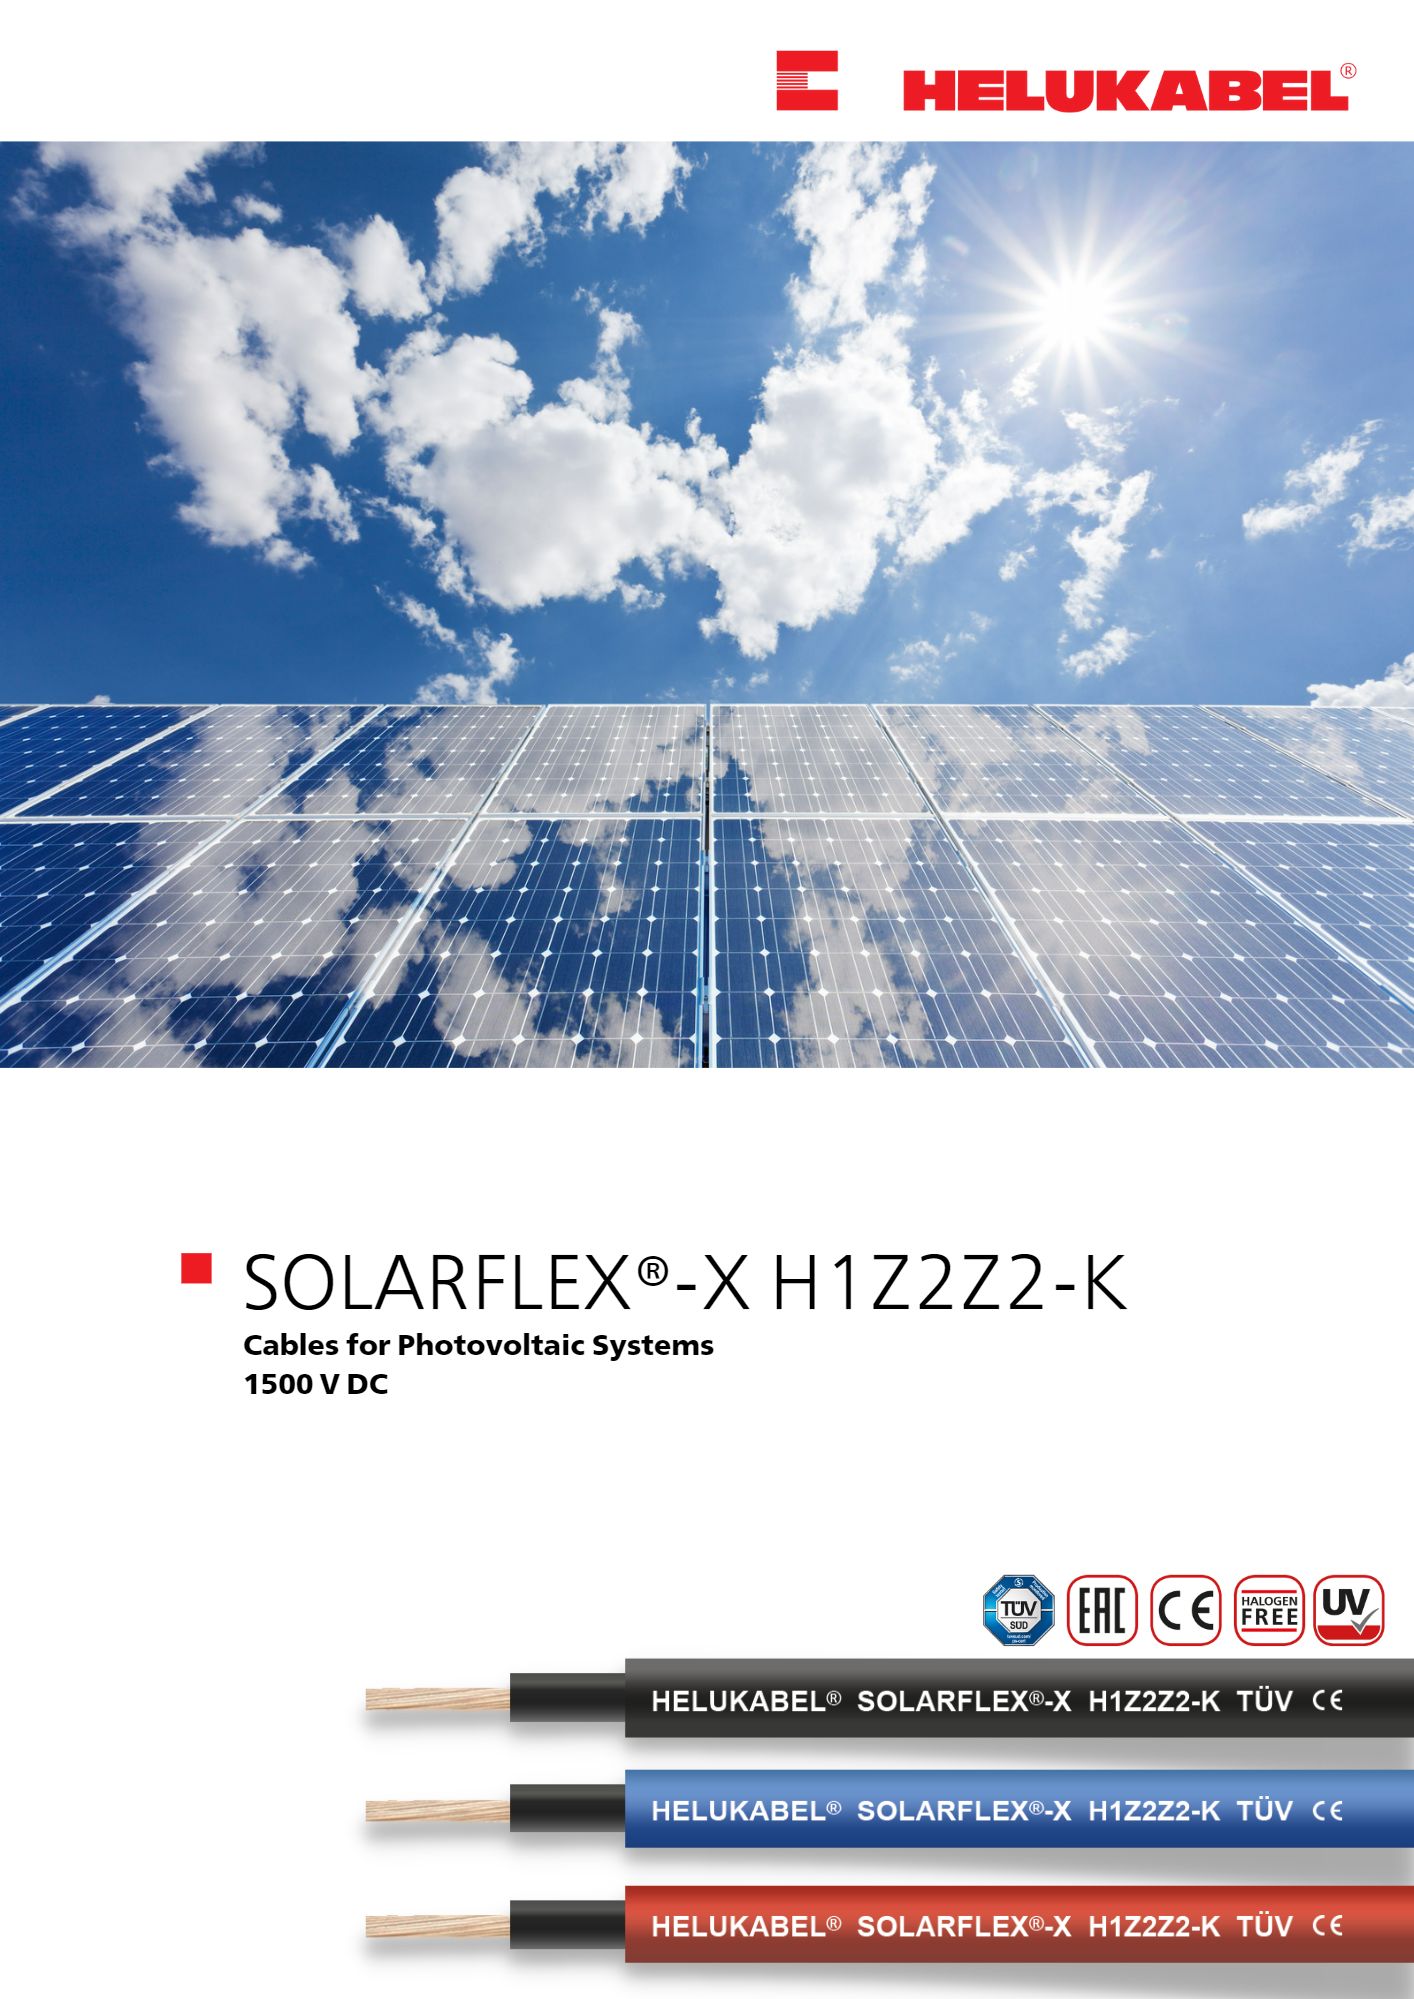 HELUKABEL SOLARFLEX®-X H1Z2Z2-K